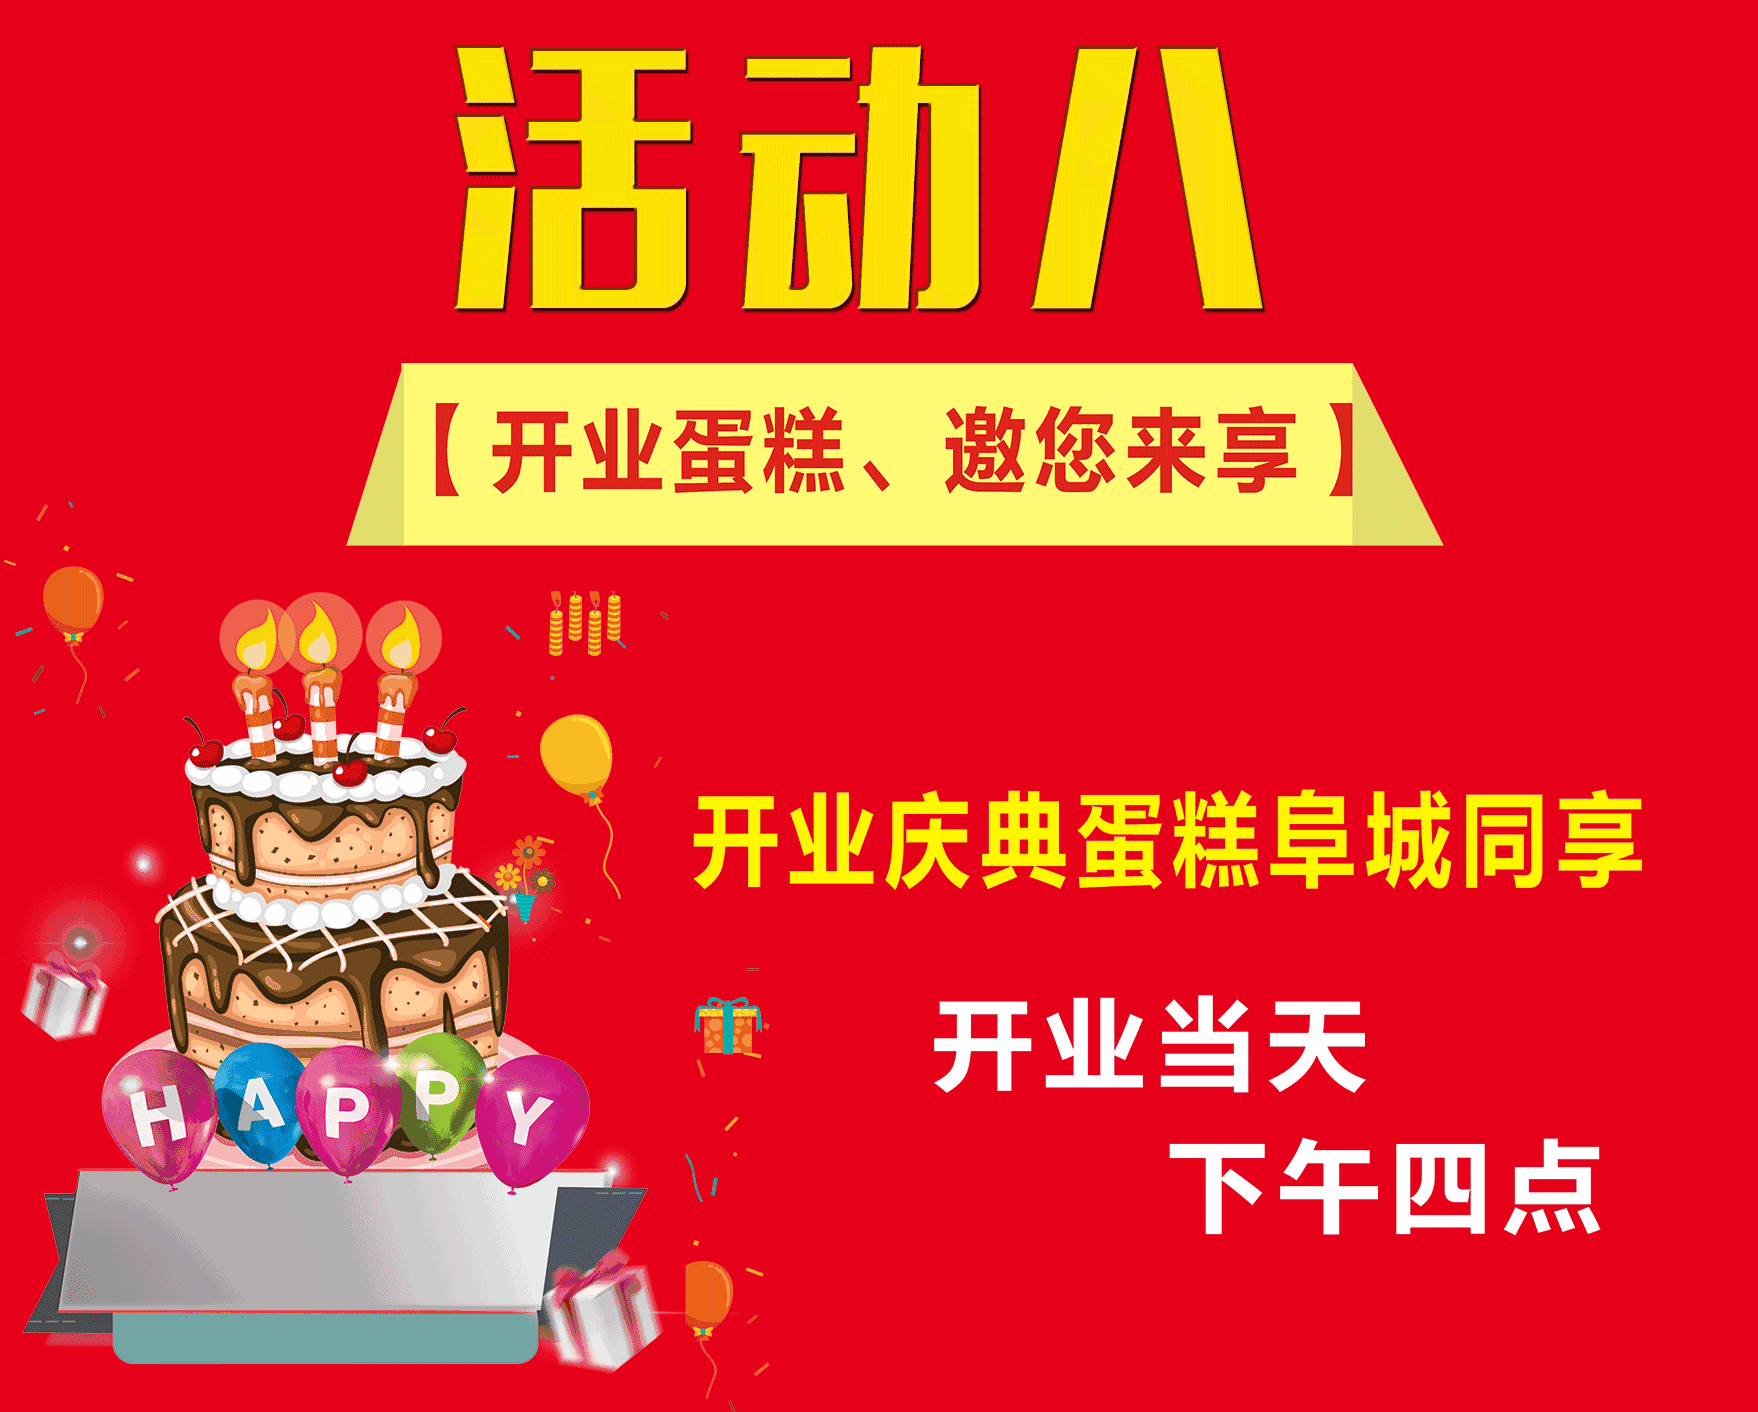 百家品牌联袂祝贺万象城阜阳华联生活超市 10 月 28 日盛大开业!